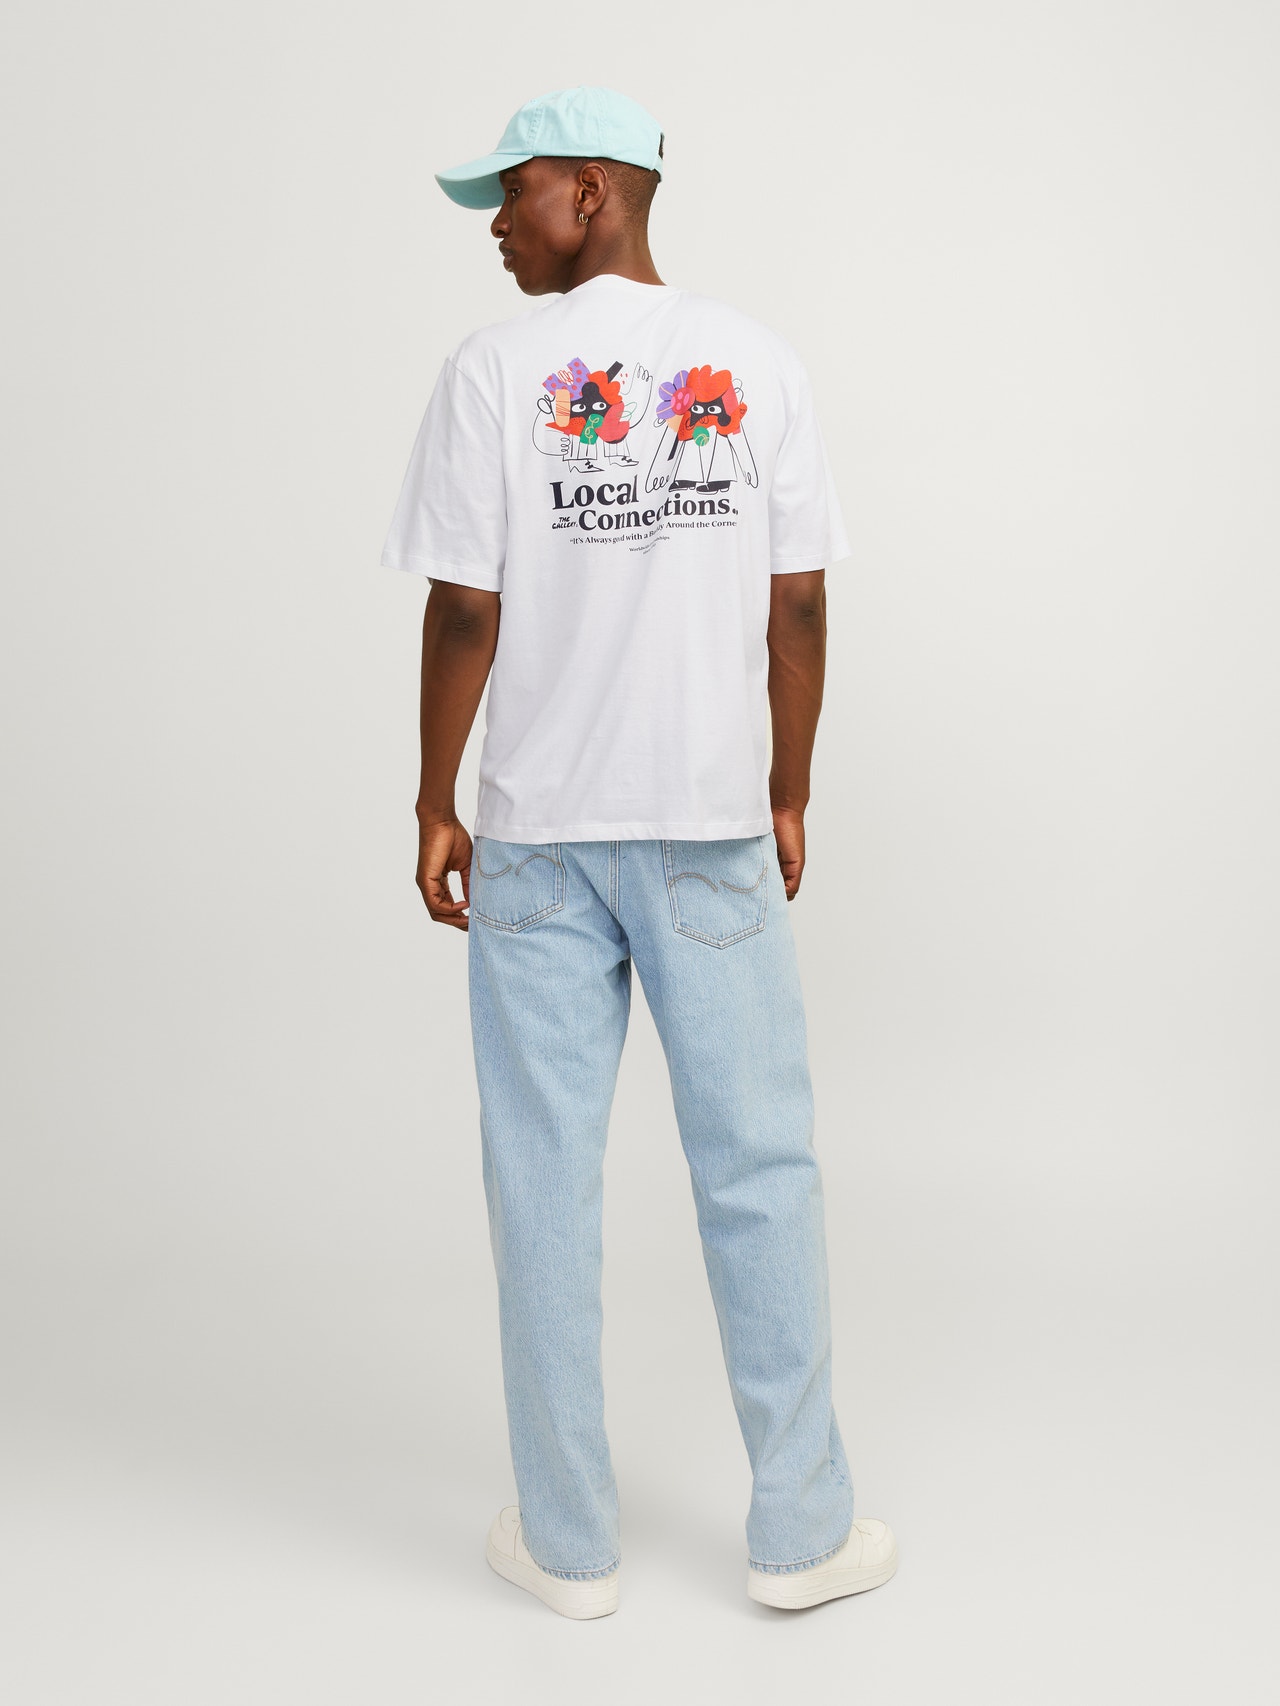 Jack & Jones T-shirt Estampar Decote Redondo -Bright White - 12263606